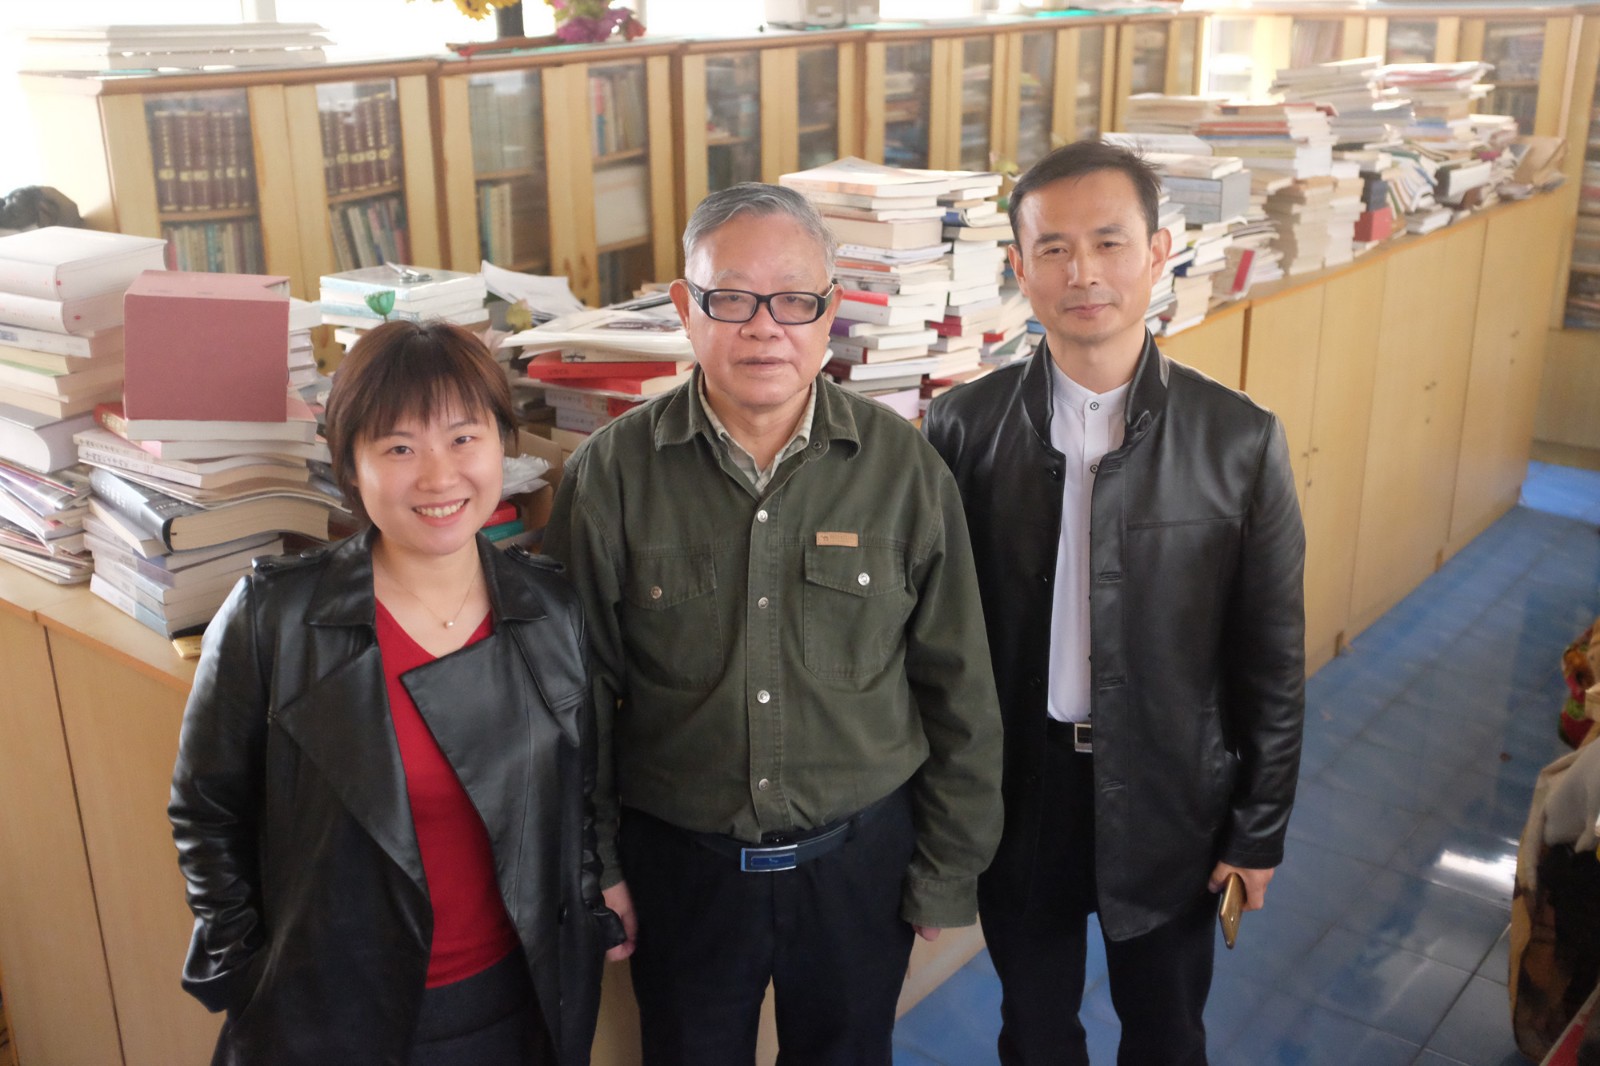 采访者吴越（左），叶永烈（中），上海作协组织人事处胡斌（右）在“游泳池”书房.JPG